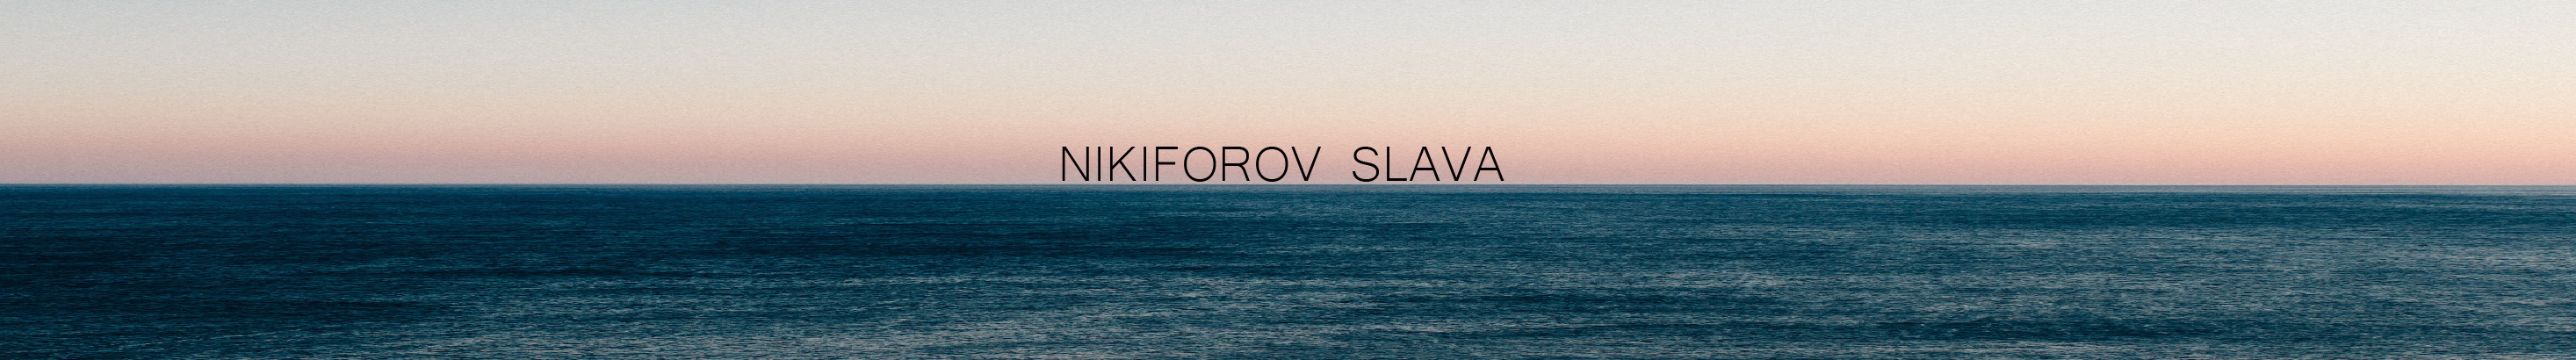 Nikiforov Slava's profile banner